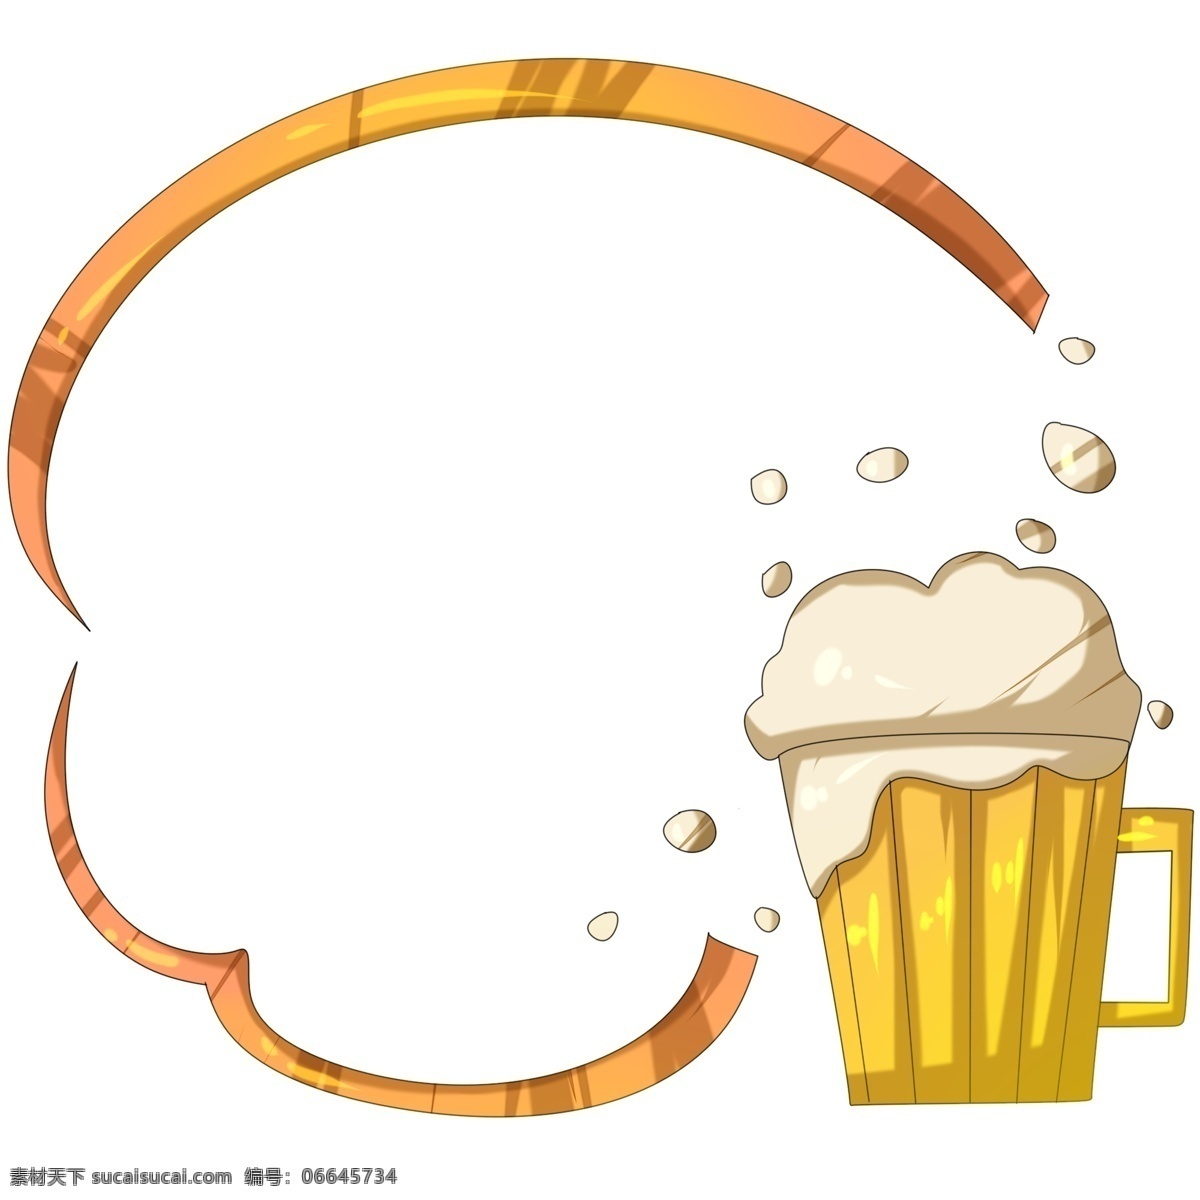 新鲜 杯 装 啤酒 边框 矢量图 卡通 泡沫 酒吧 啤酒边框 泡沫啤酒 杯装 饮品设计 酒水饮料 酒馆 酿酒 大麦 酒精